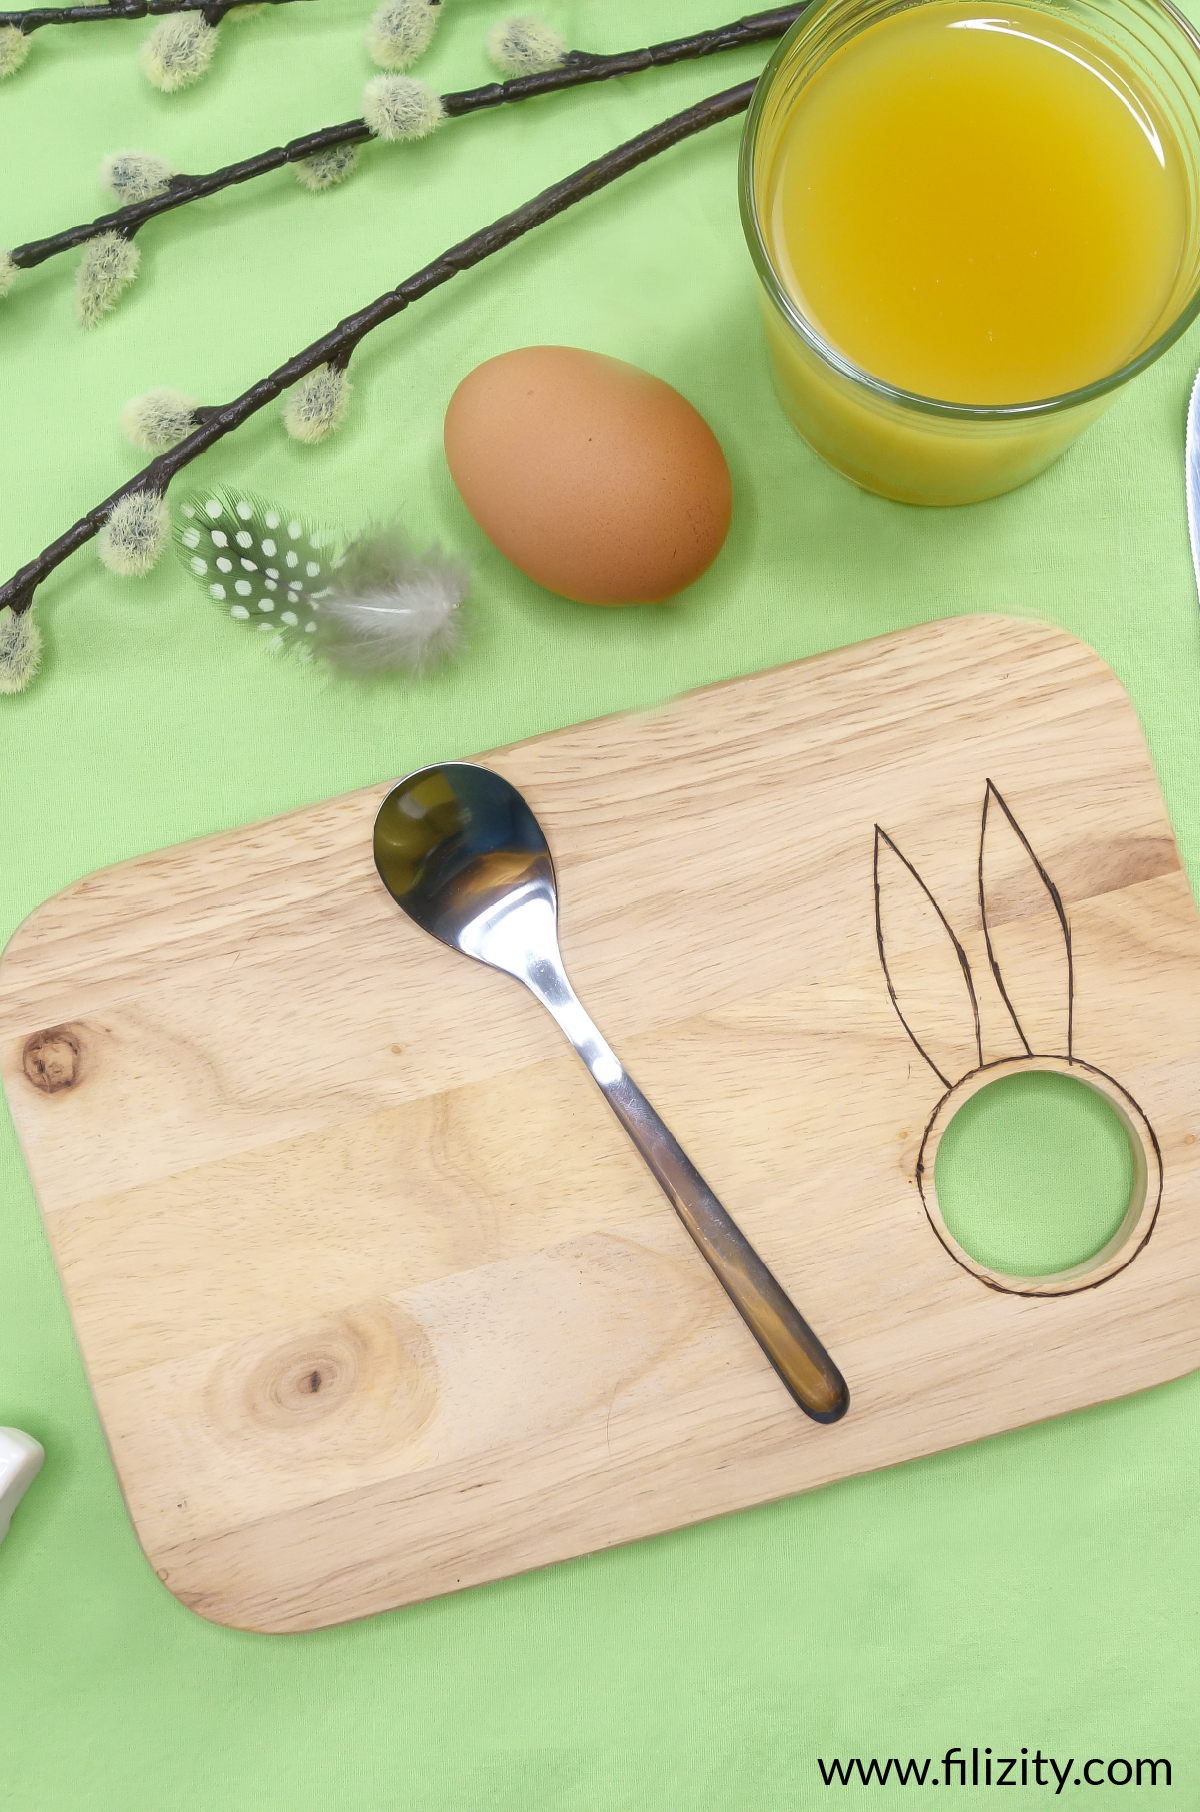 Selbst gemachtes Oster-Frühstücksbrett mit Eierbecher und Hasenohren Brandmalerei, ein Frühstücksei, ein Metalllöffel und ein Glas Orangensaft | Filizity.com - Kreativmagazin &DIY Blog